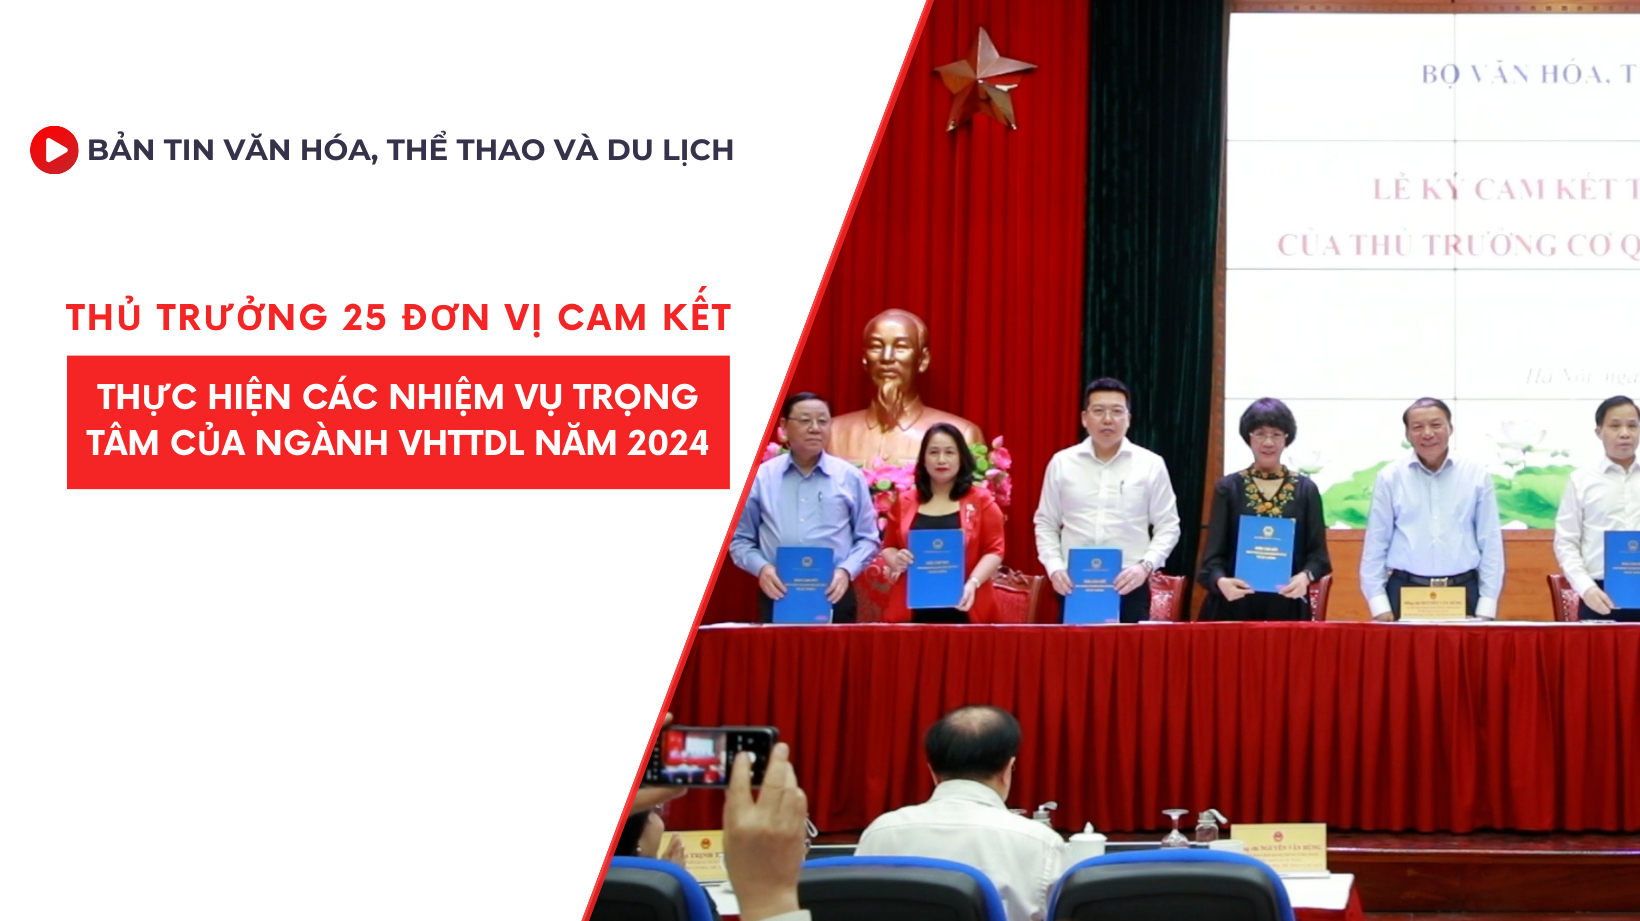 Bản tin VHTTDL số 320: Thủ trưởng 25 đơn vị cam kết thực hiện các nhiệm vụ trọng tâm của ngành VHTTDL năm 2024